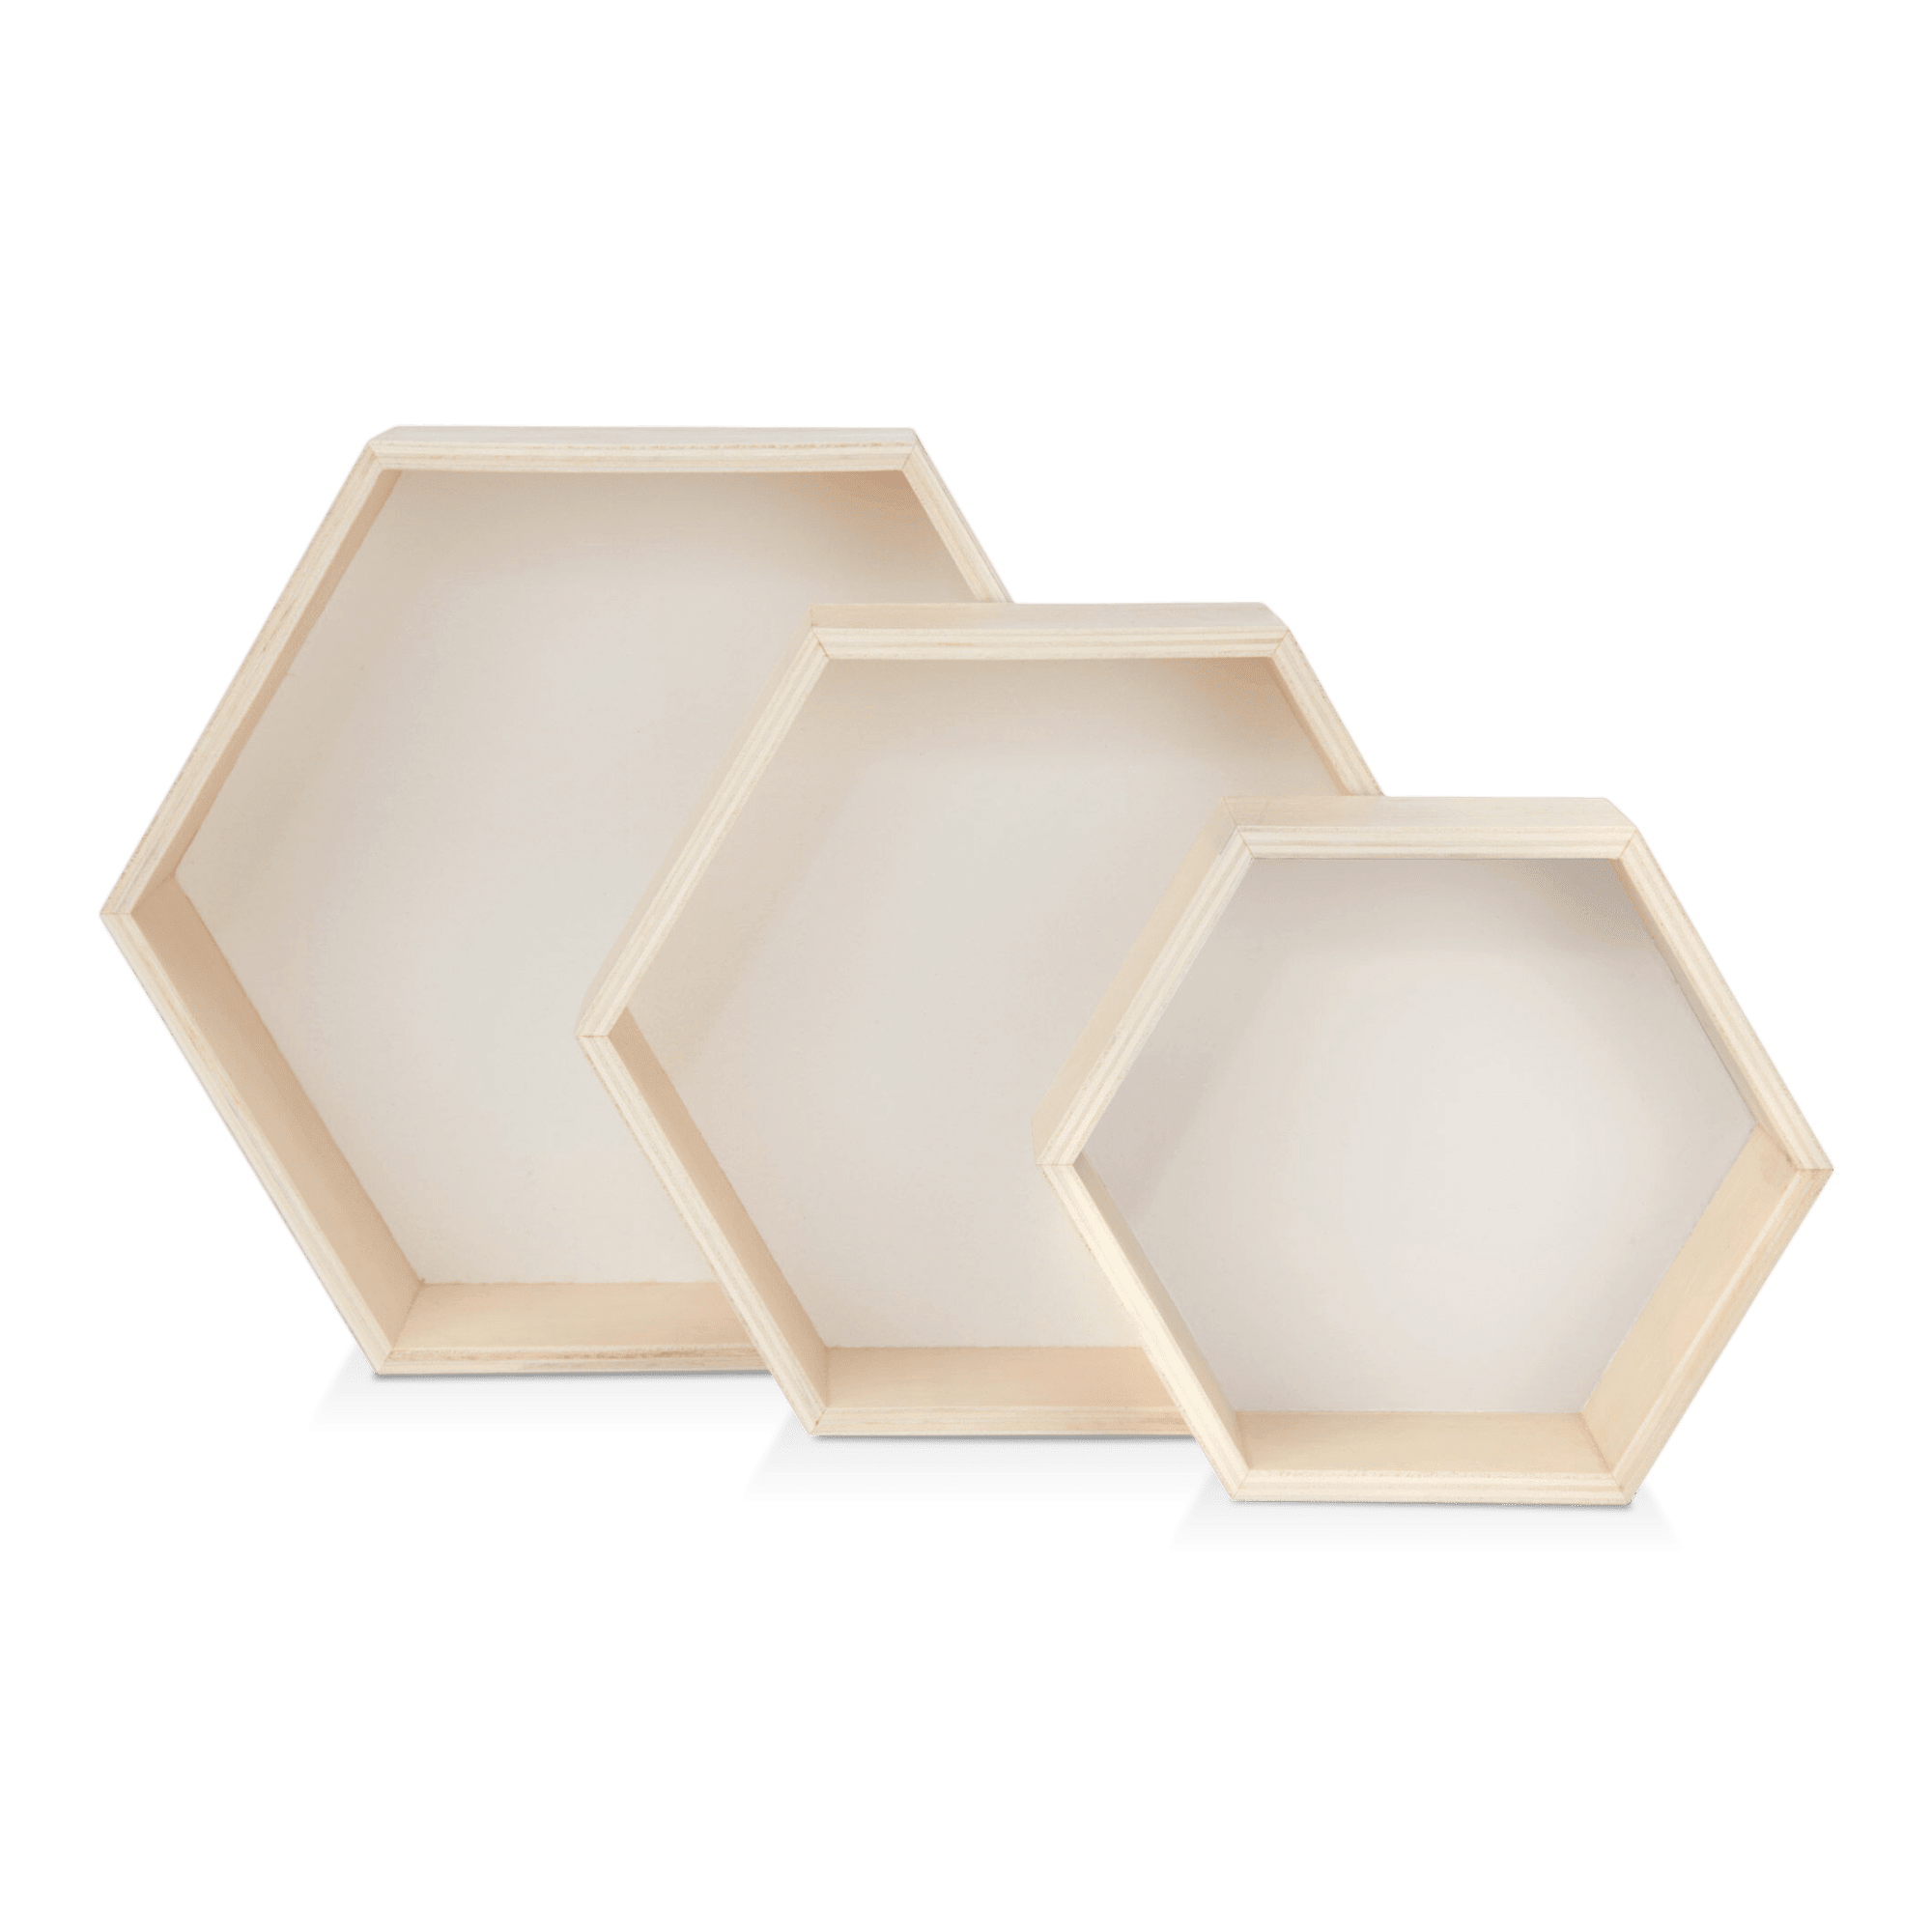 Set of 3 Hexagonal Wall Shelves